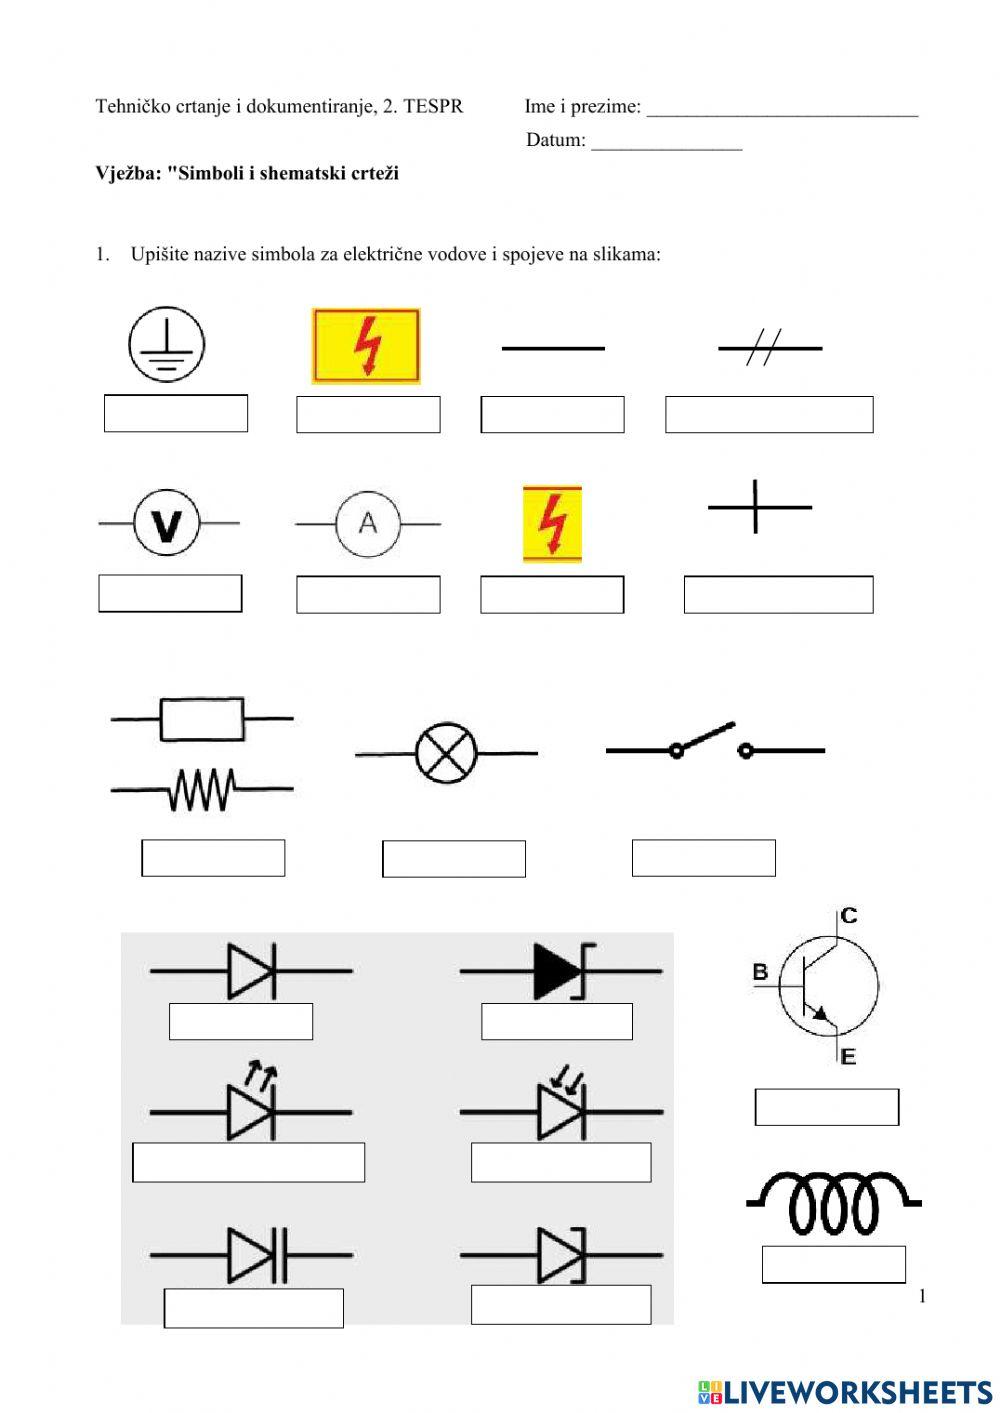 Simboli i shematski crteži